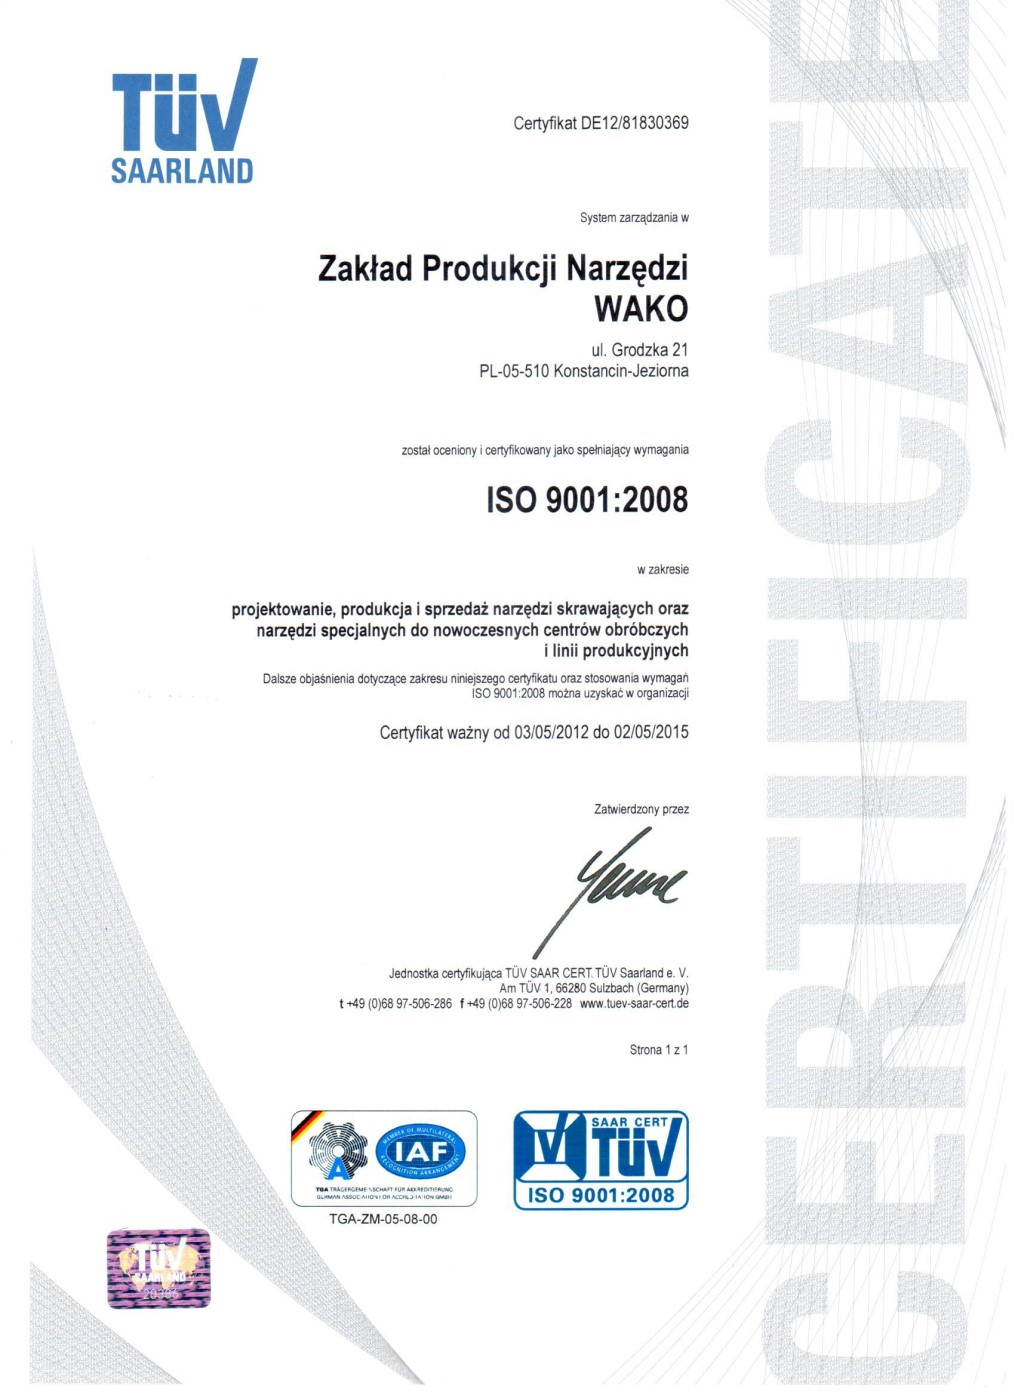 System Jakości ISO 9001 wdrożony w 1999r Wdrożony w 1999 roku system jakości jest